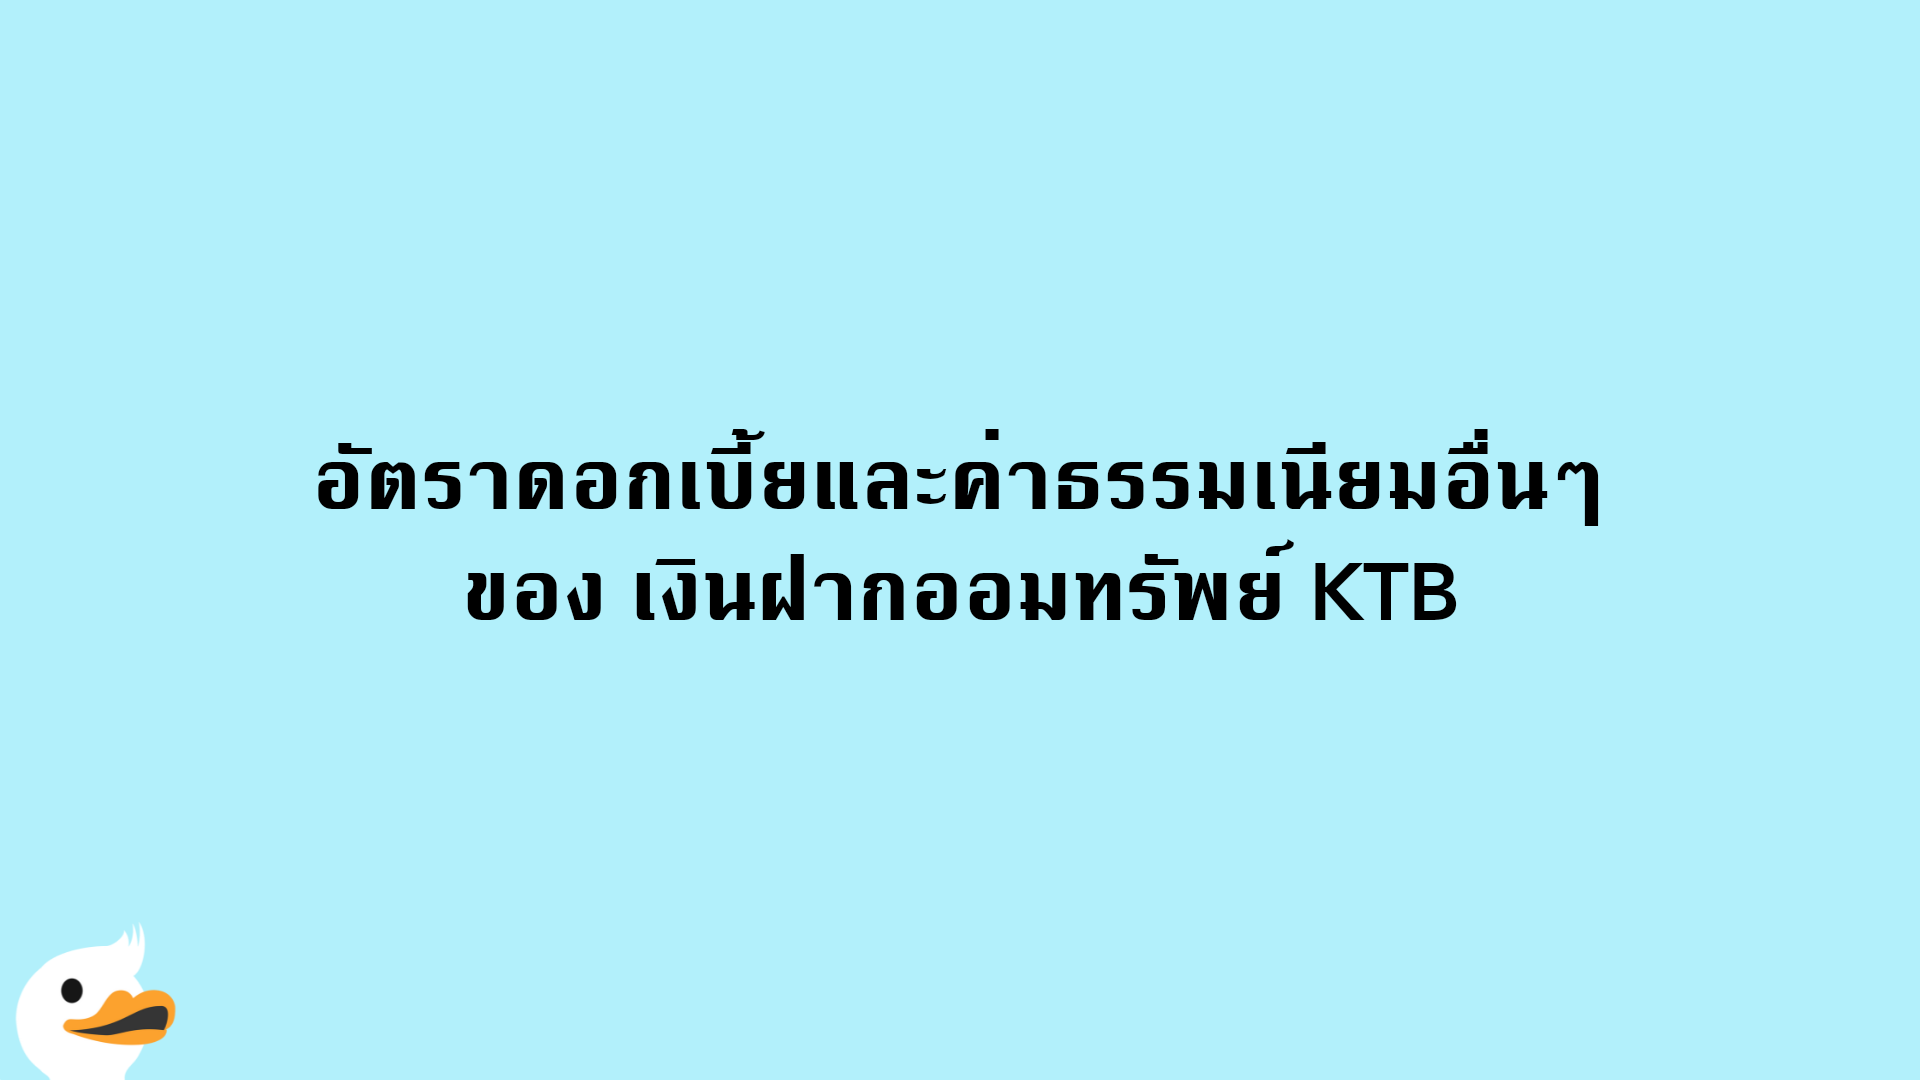 อัตราดอกเบี้ยและค่าธรรมเนียมอื่นๆ ของ เงินฝากออมทรัพย์ KTB